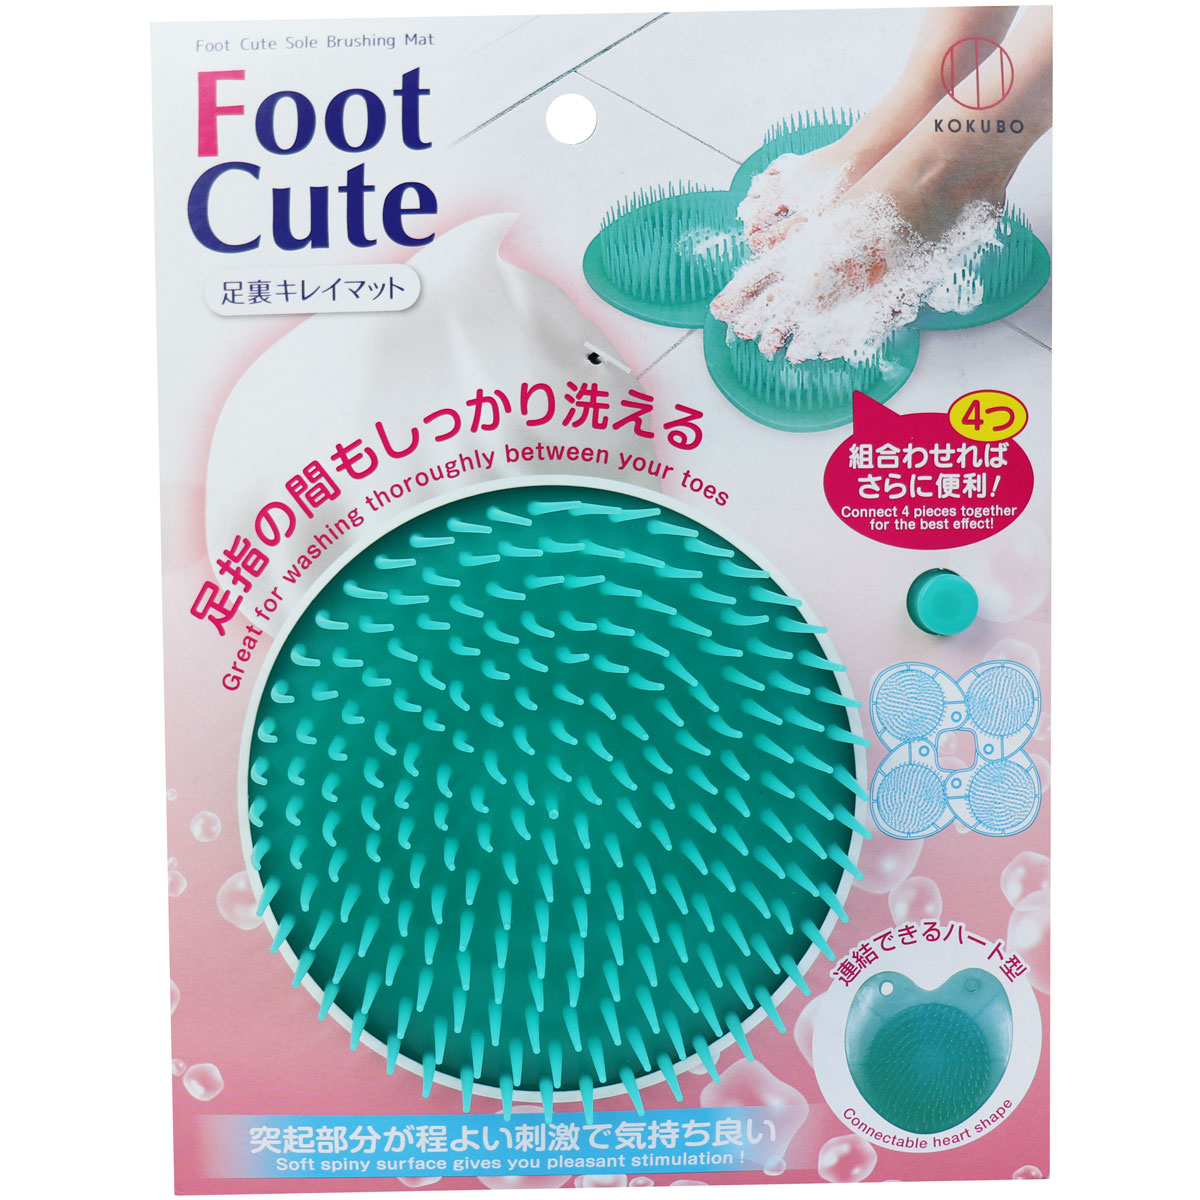 [廃盤] Foot Cute 足裏キレイマット グリーン KH-057